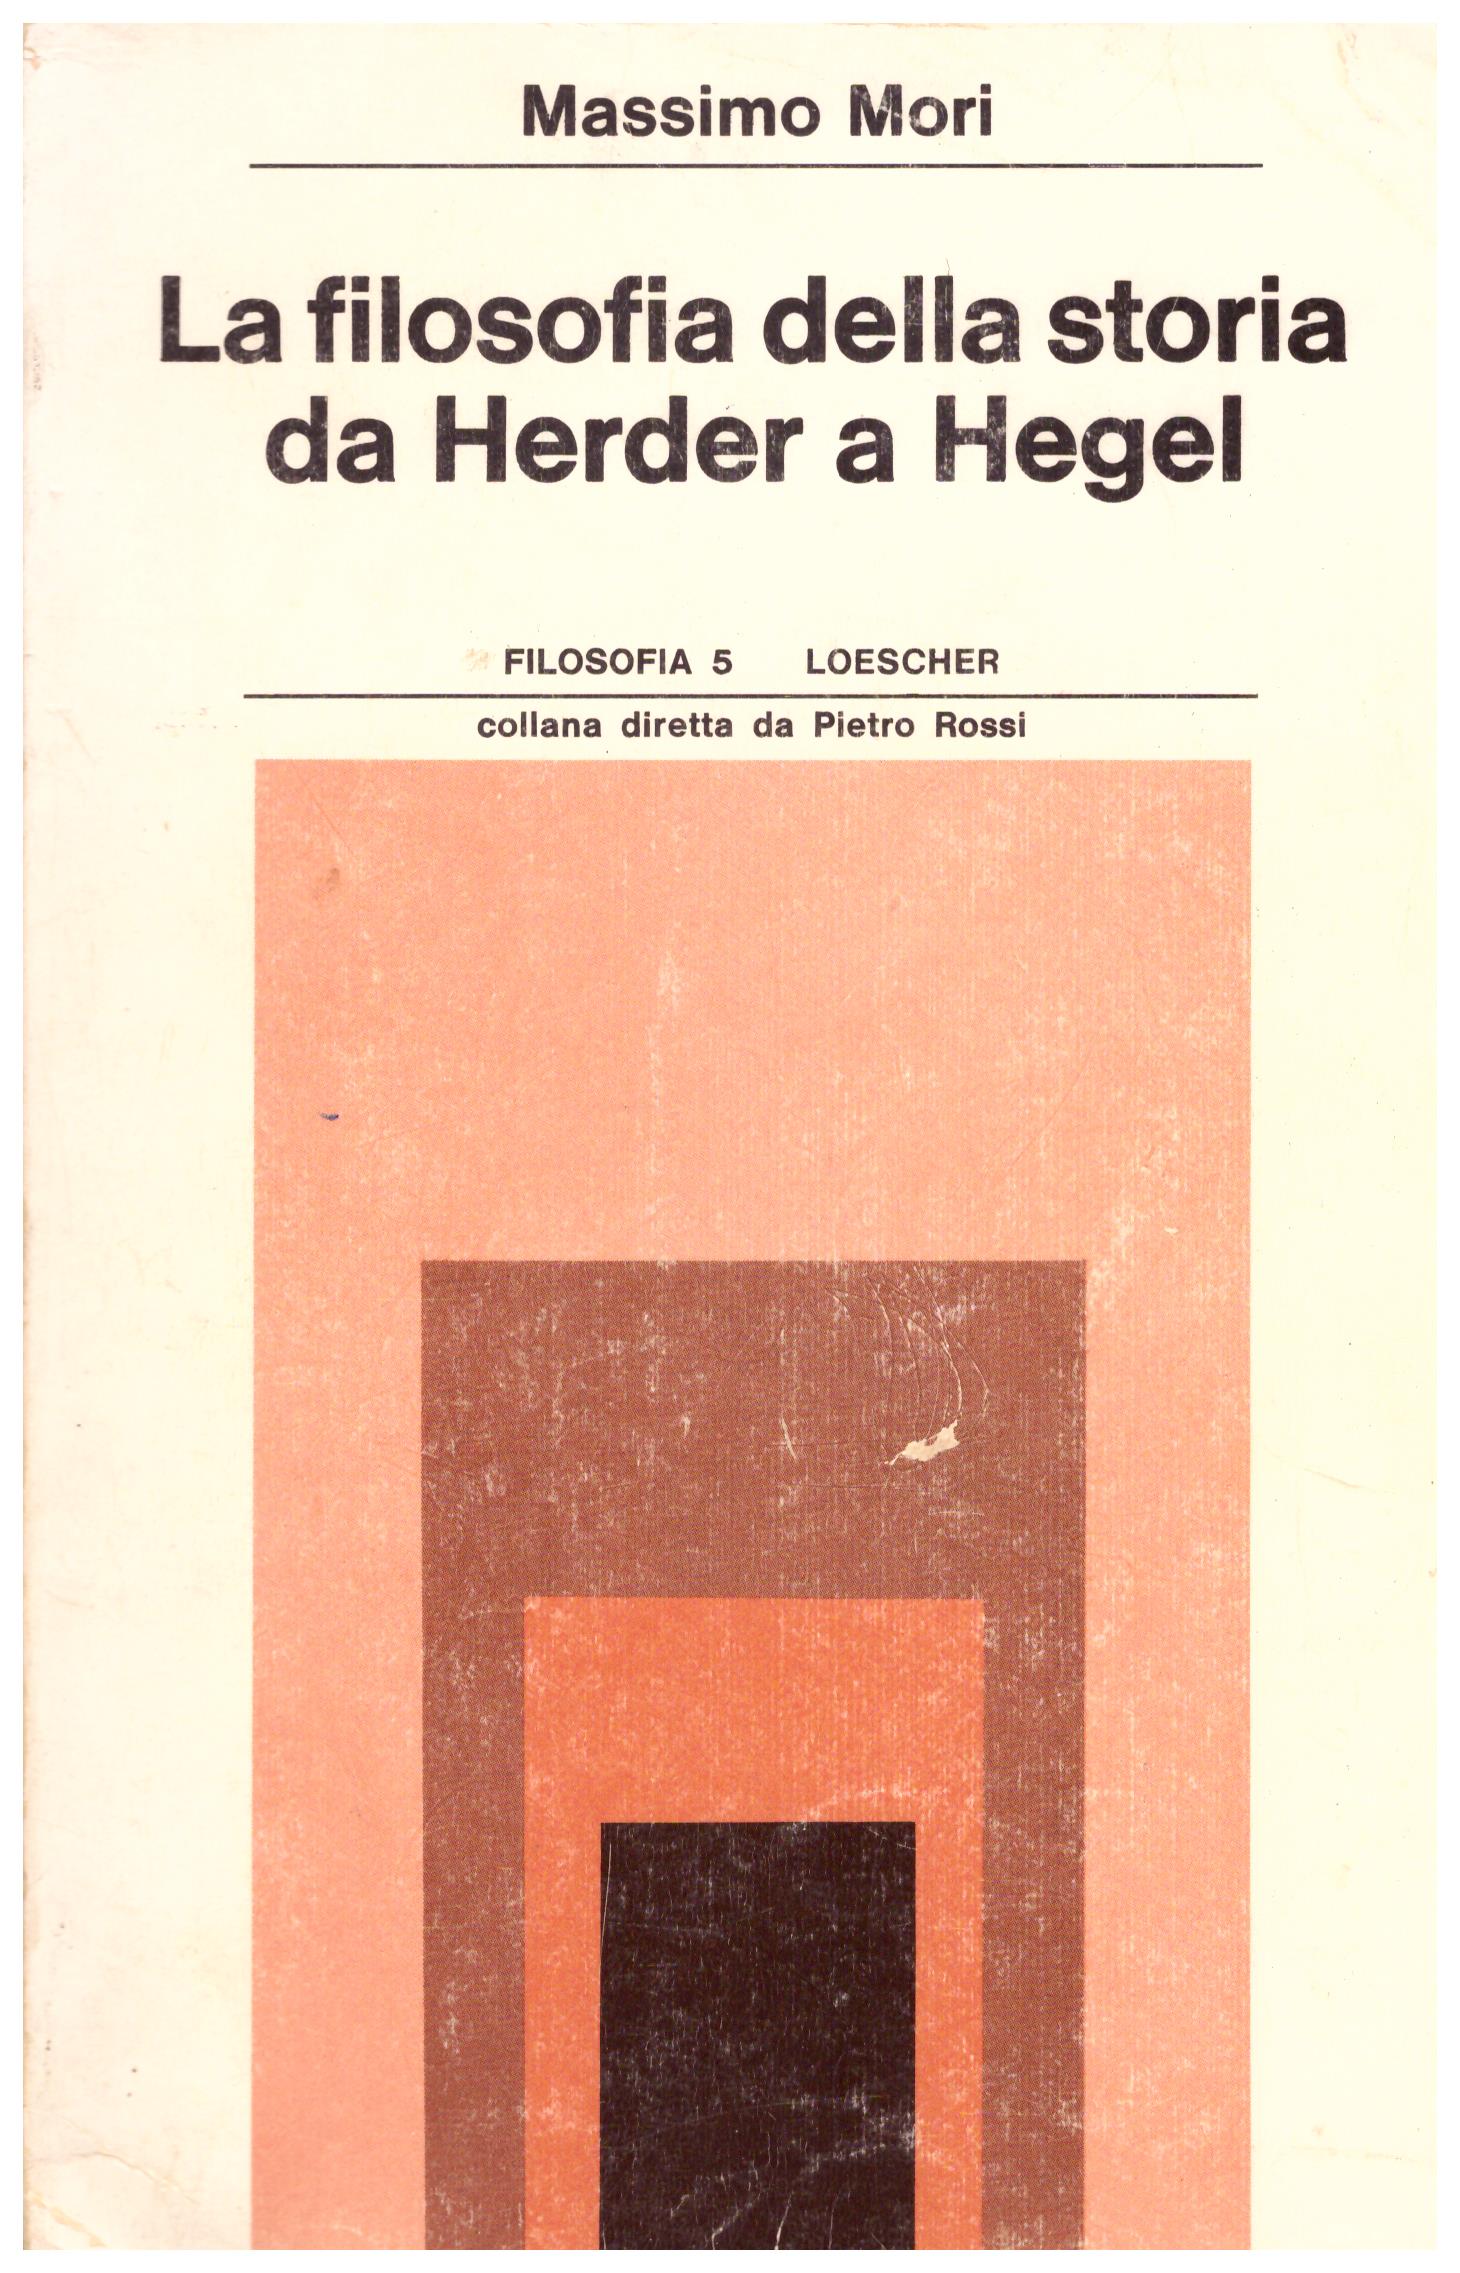 La filosofia della storia da Herder a Hegel